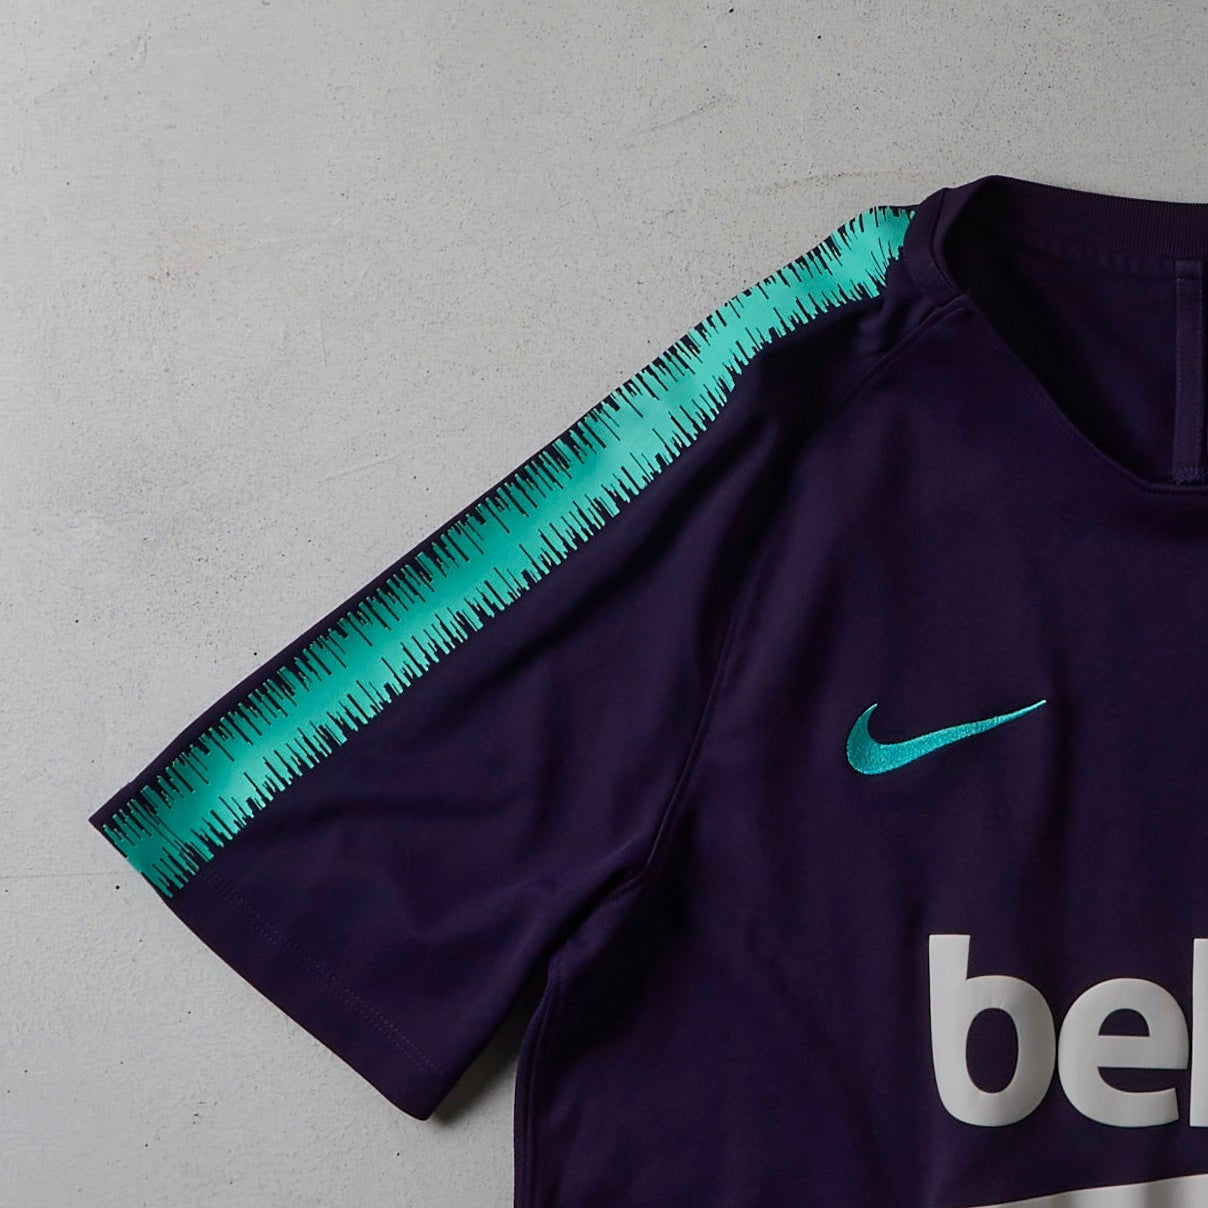 Vintage FC Barcelona Nike Jersey